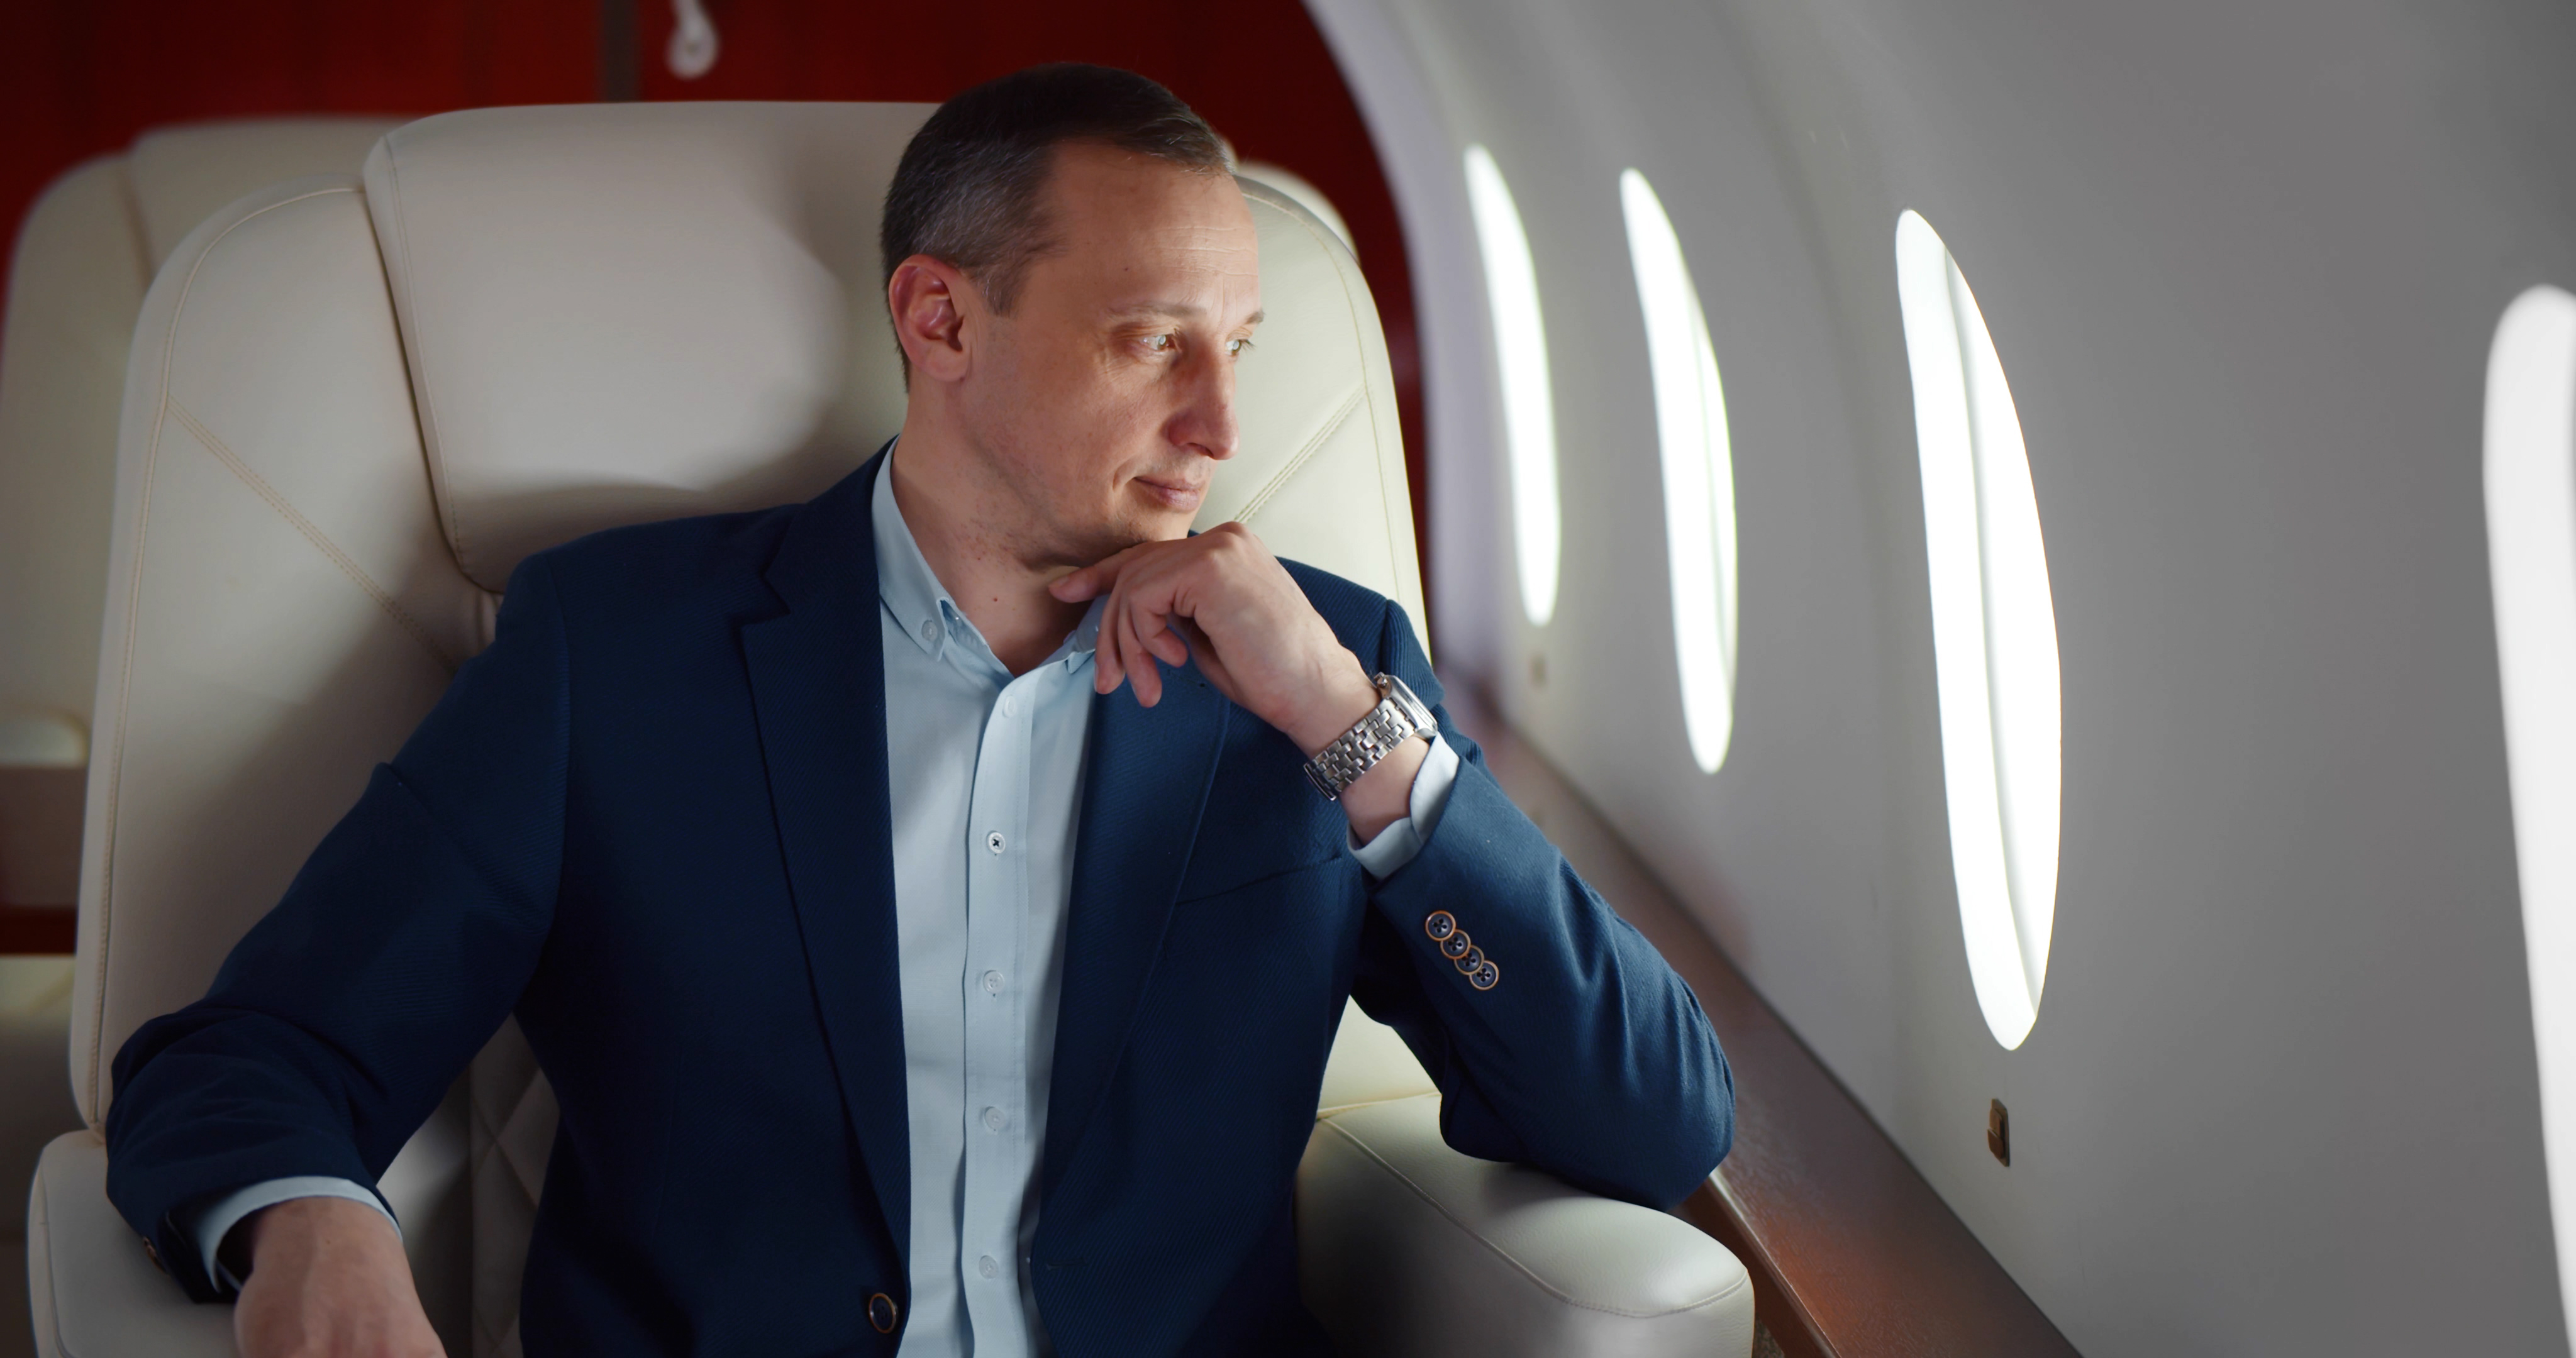 Ein Geschäftsmann im Anzug ist auf einem Erste-Klasse-Flug abgebildet | Quelle: Shutterstock